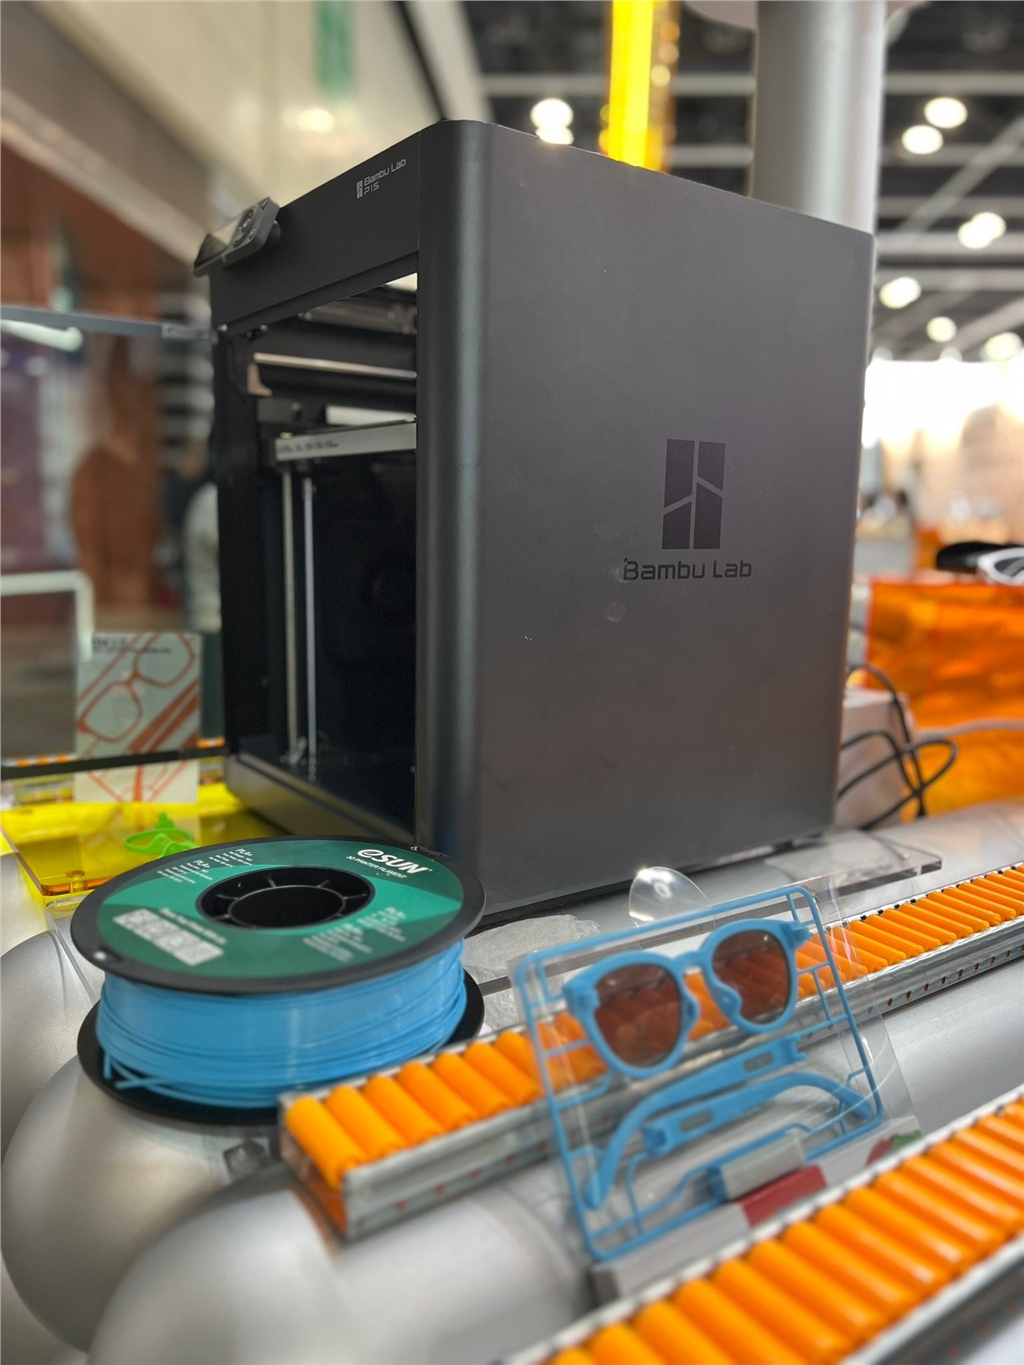 Bambu Lab P1S 3D列印機 與ESUN PLA 線材在展覽現場